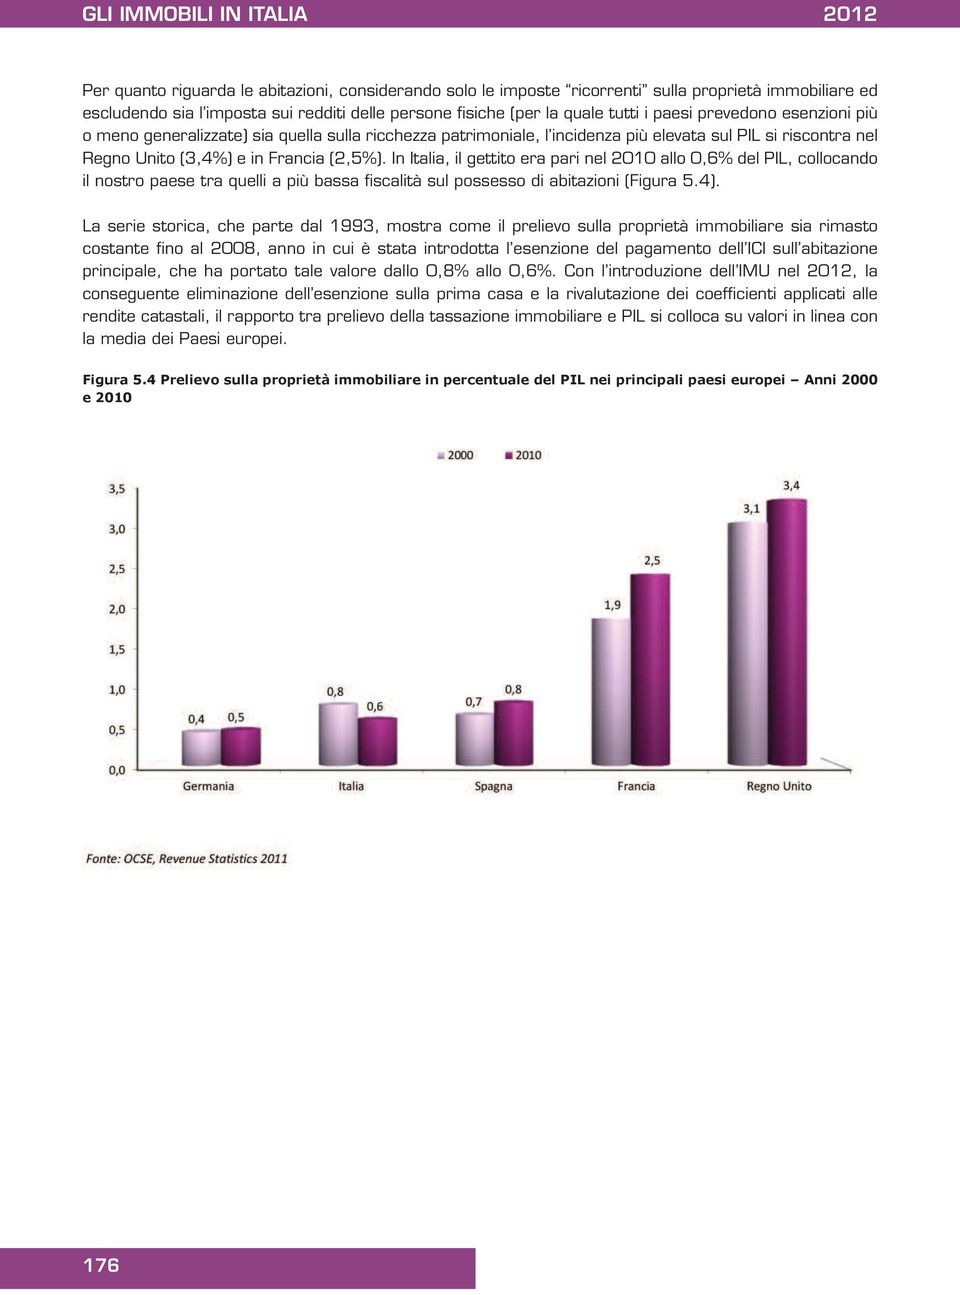 In Italia, il gettito era pari nel 2010 allo 0,6% del PIL, collocando il nostro paese tra quelli a più bassa fiscalità sul possesso di abitazioni (Figura 5.4).